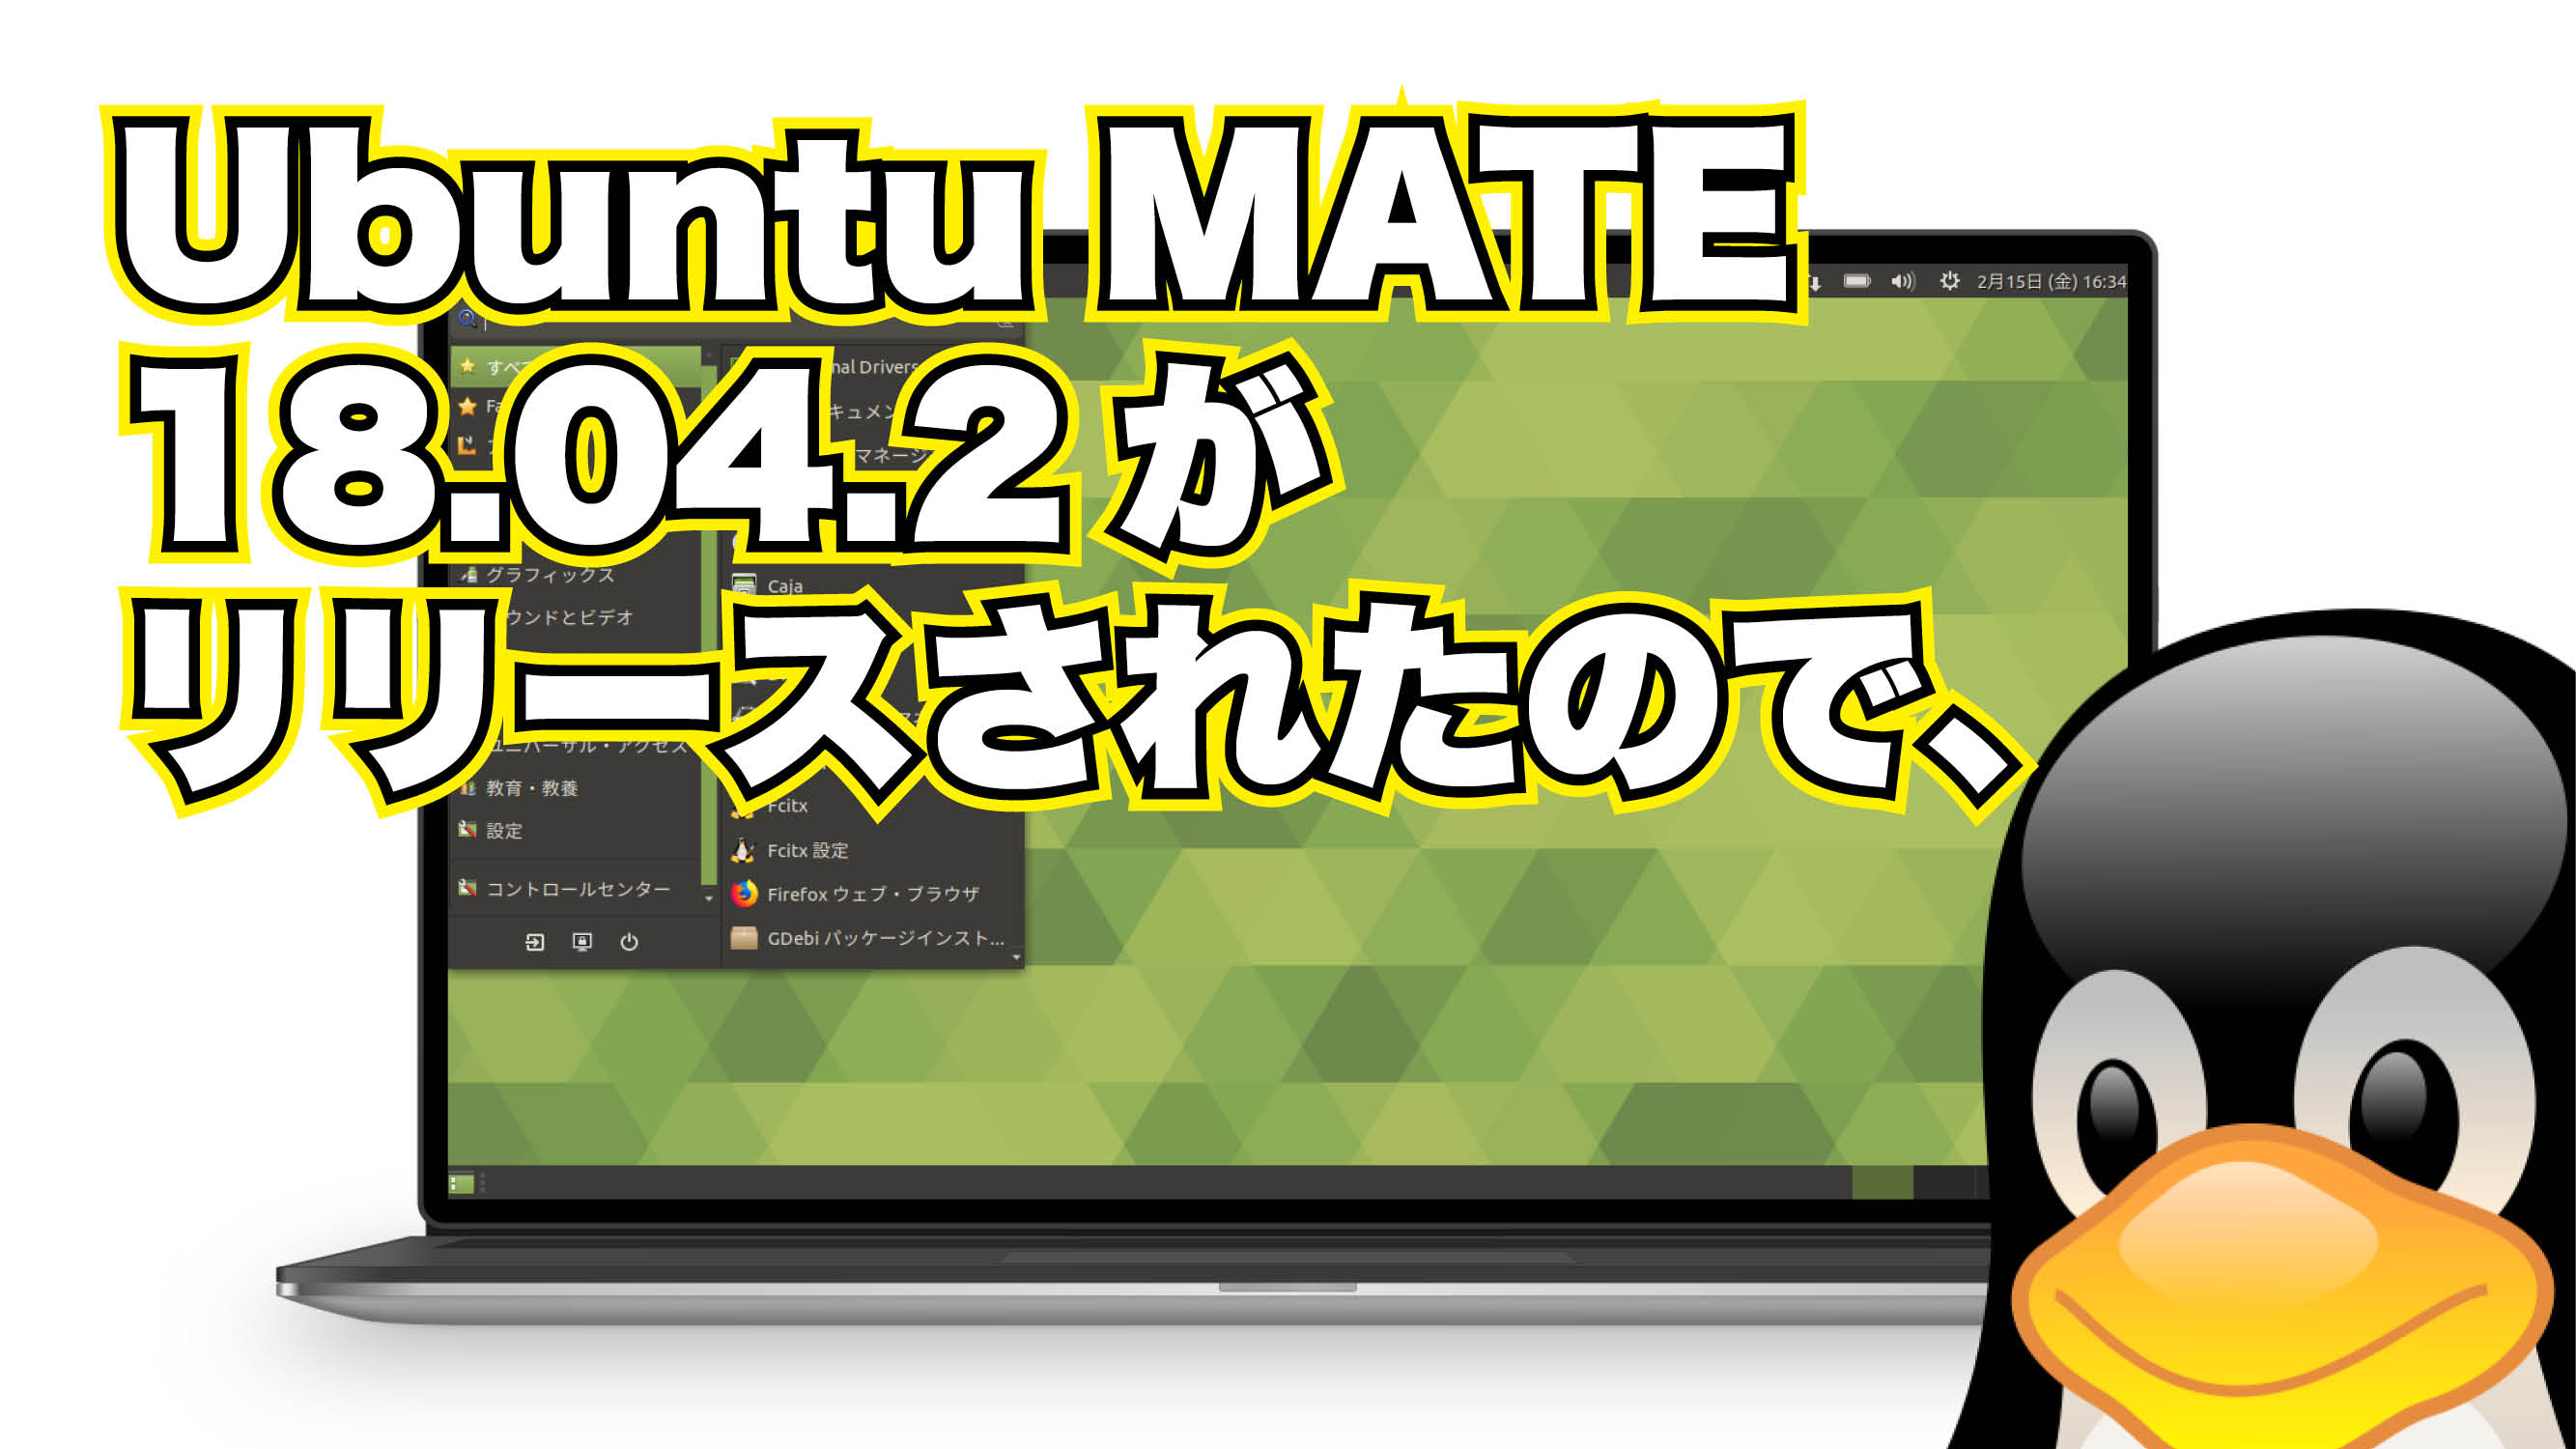 Ubuntu MATE 18.04.2 がリリースされたので、